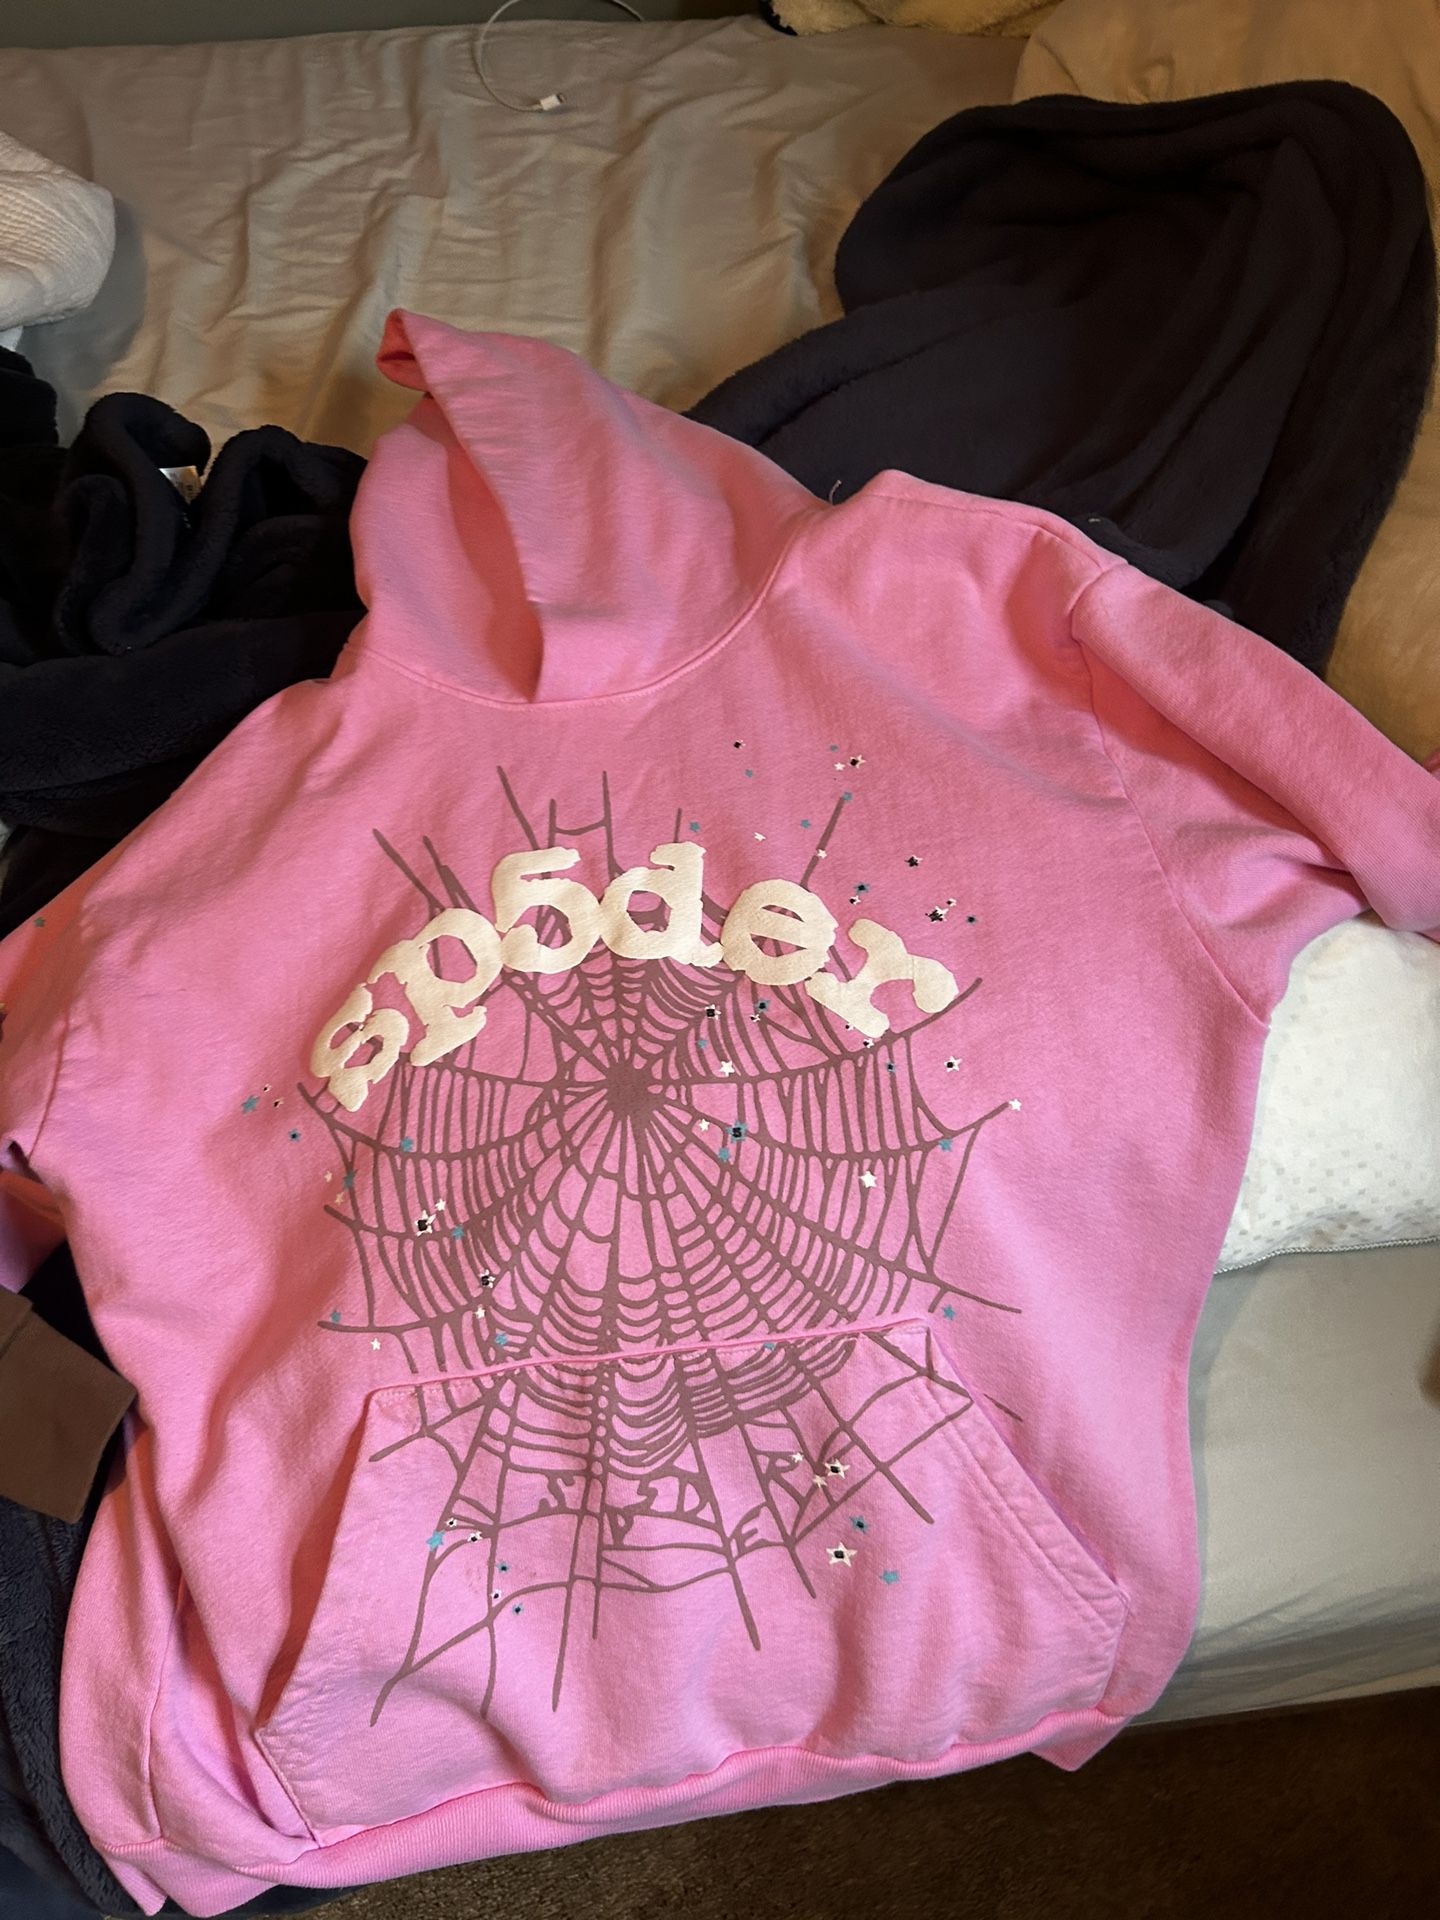 Sp5der hoodie og pink